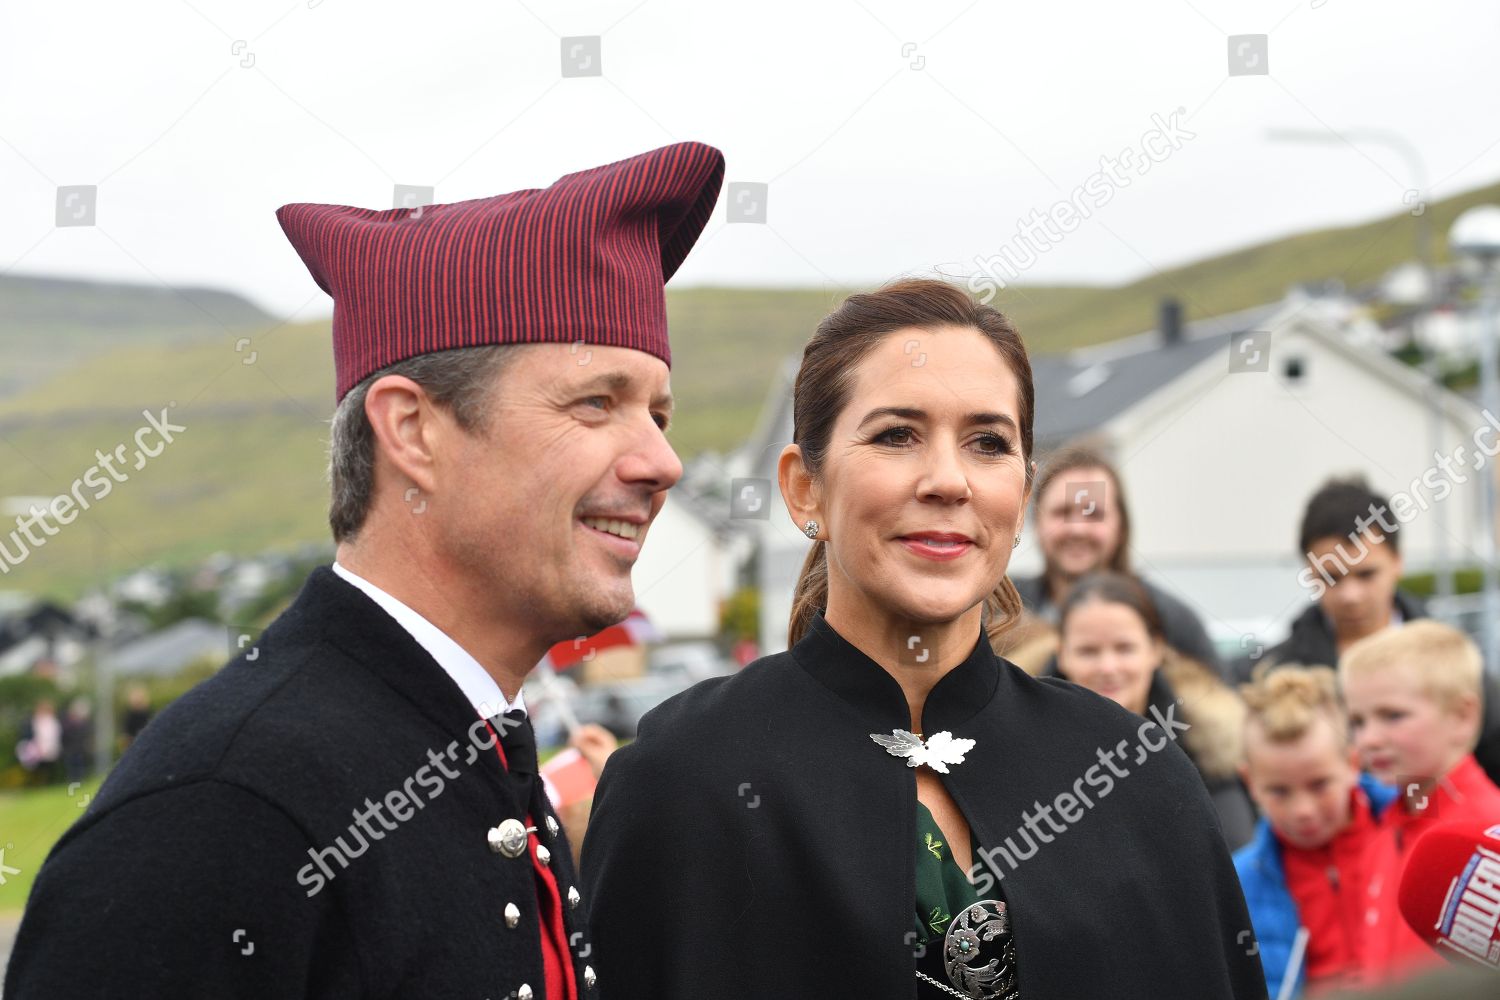 danish-royals-visit-to-the-faroe-islands-denmark-shutterstock-editorial-9807700av.jpg